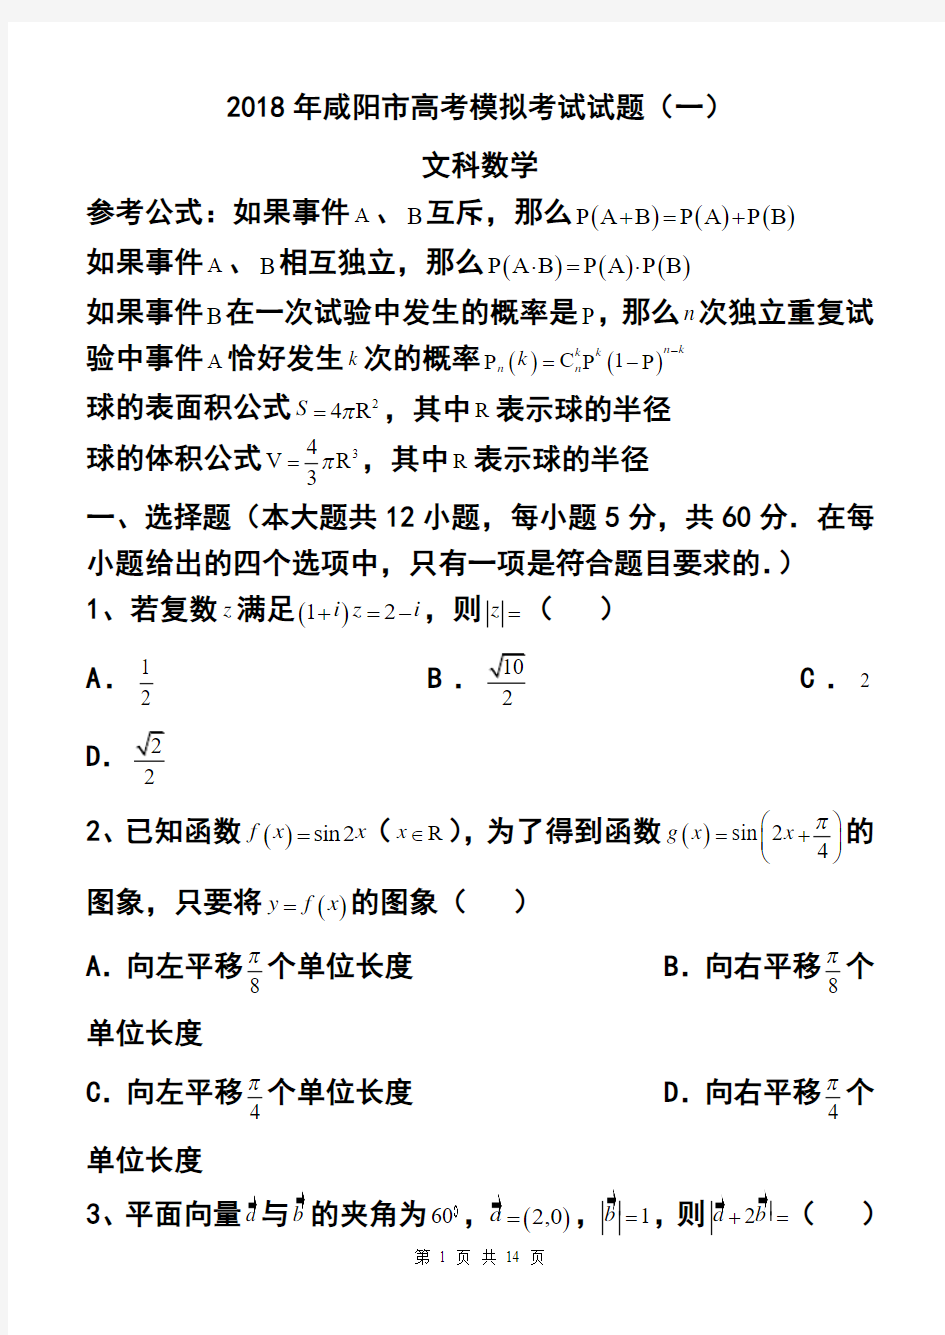 2018年陕西省咸阳市高考模拟考试(一)文科数学试题 及答案 (2)